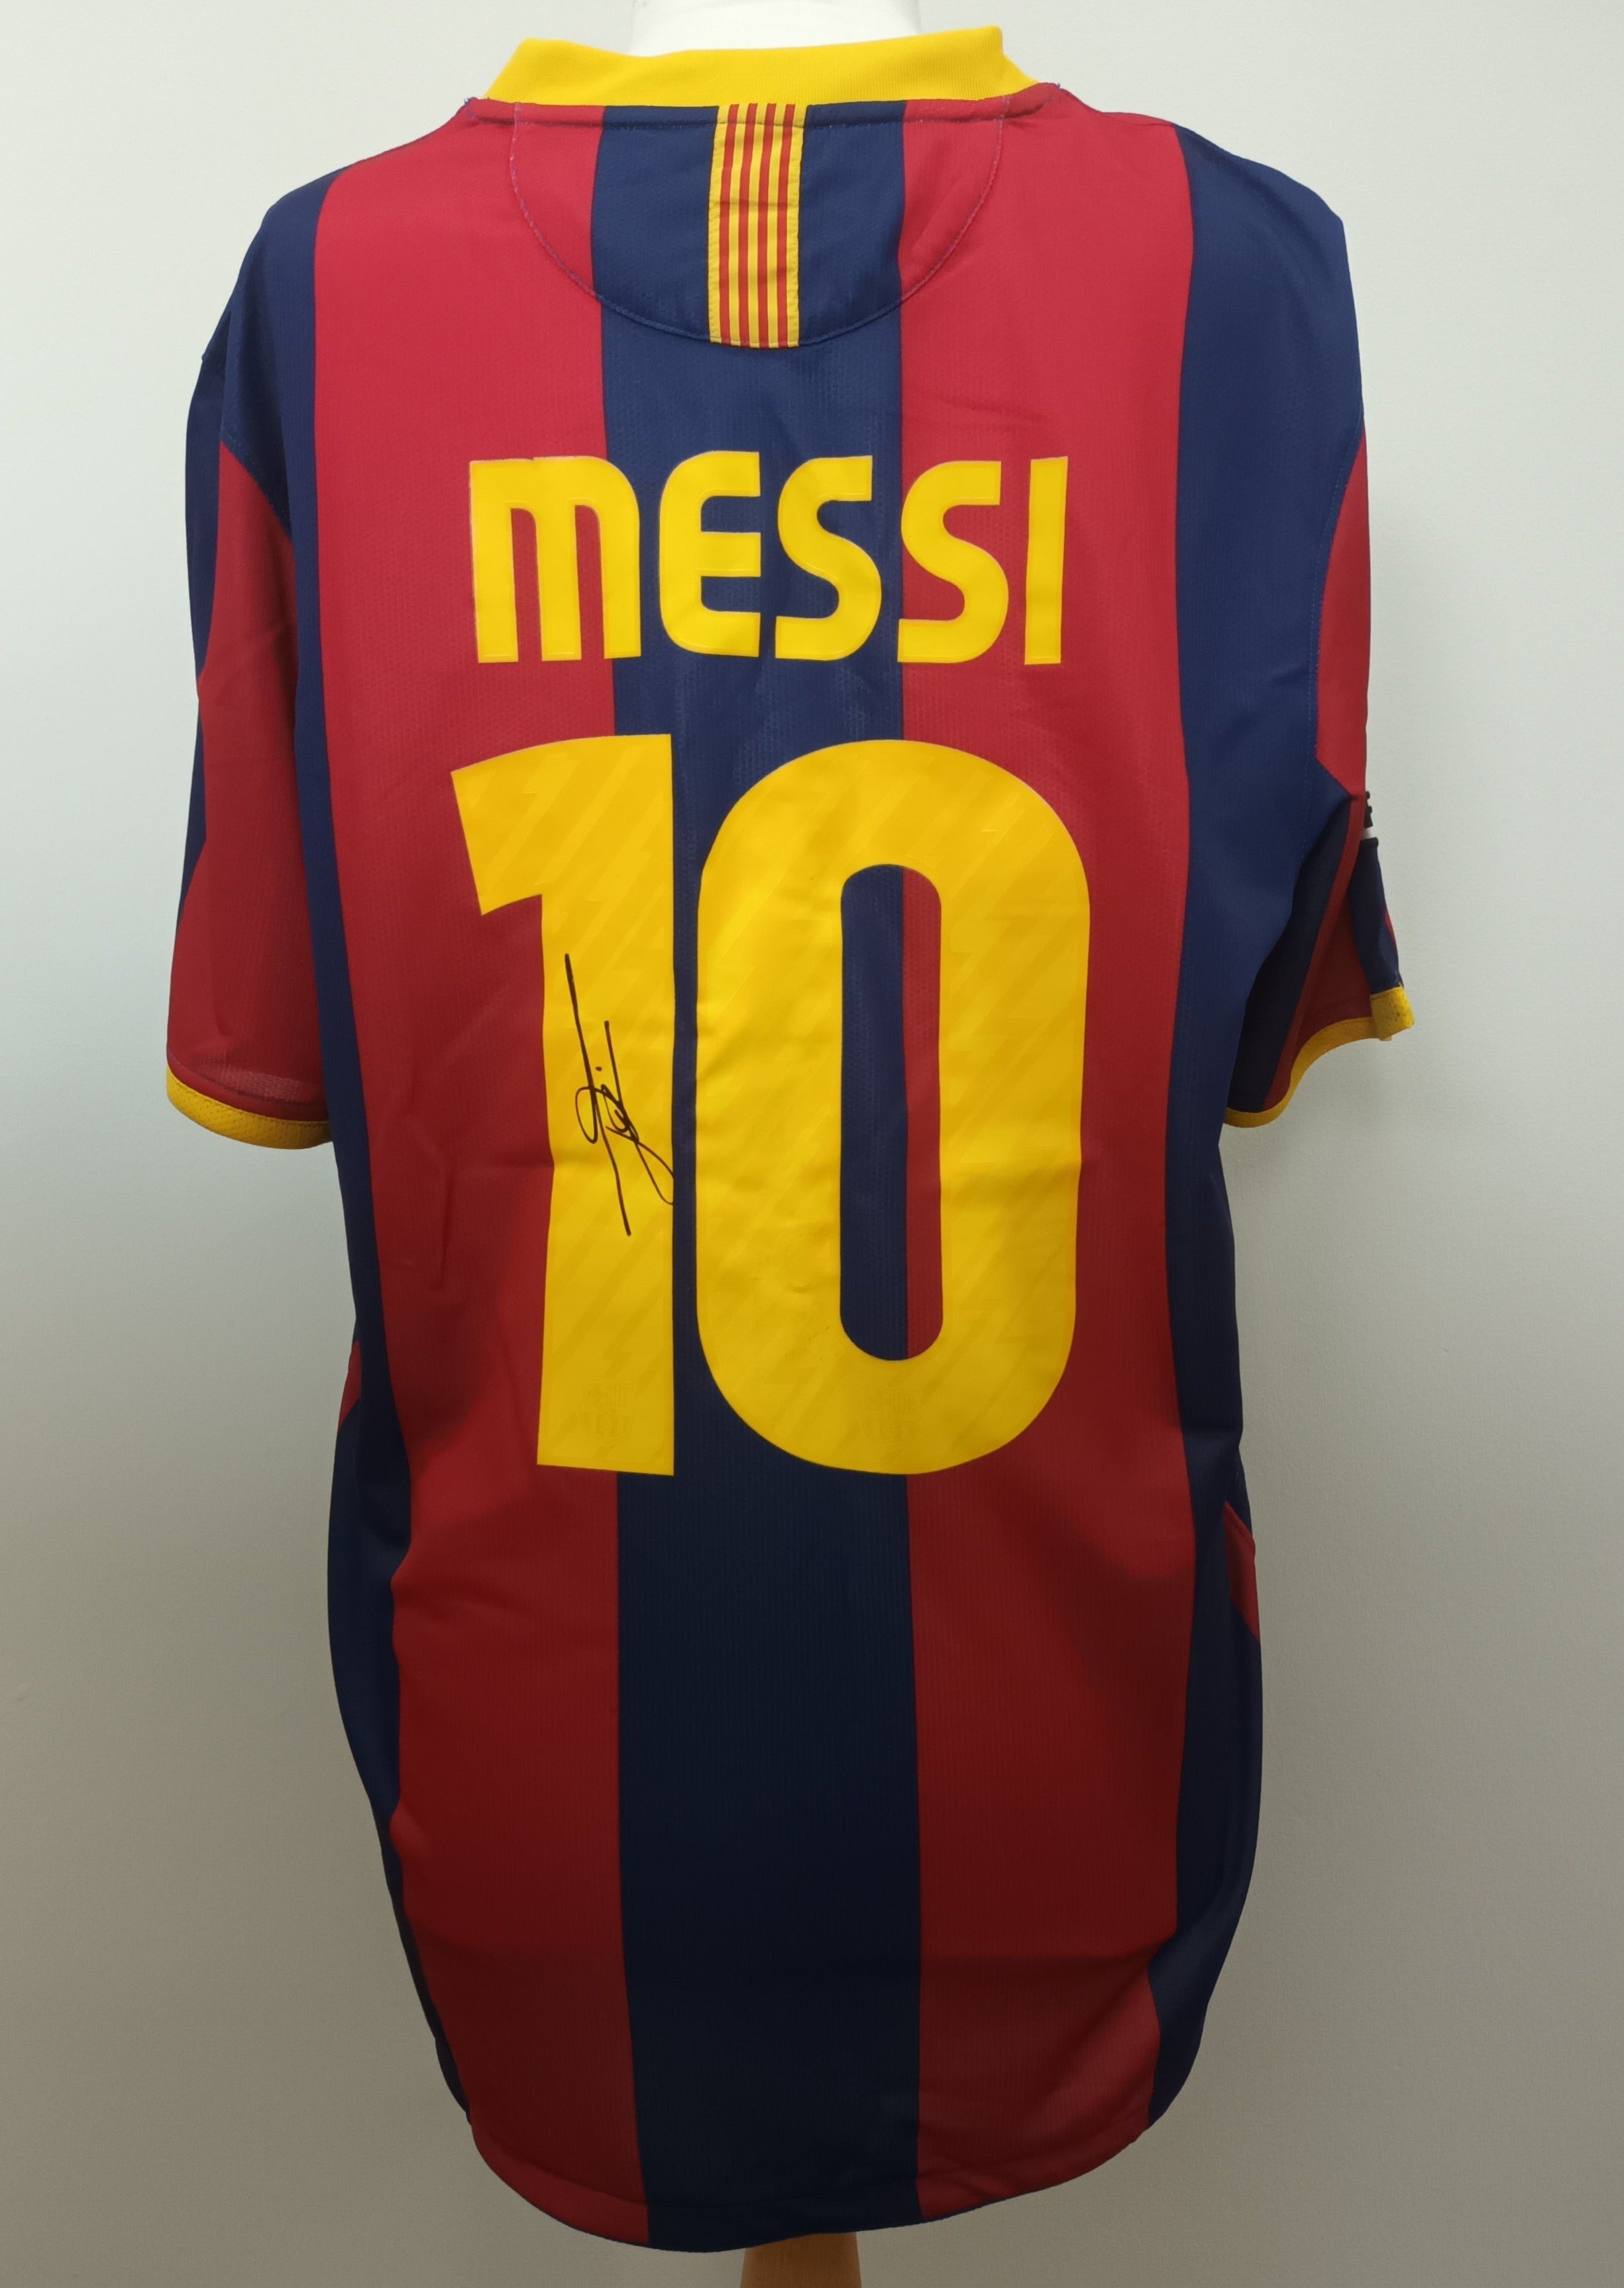 Lionel Messi signed Barcelona shirt